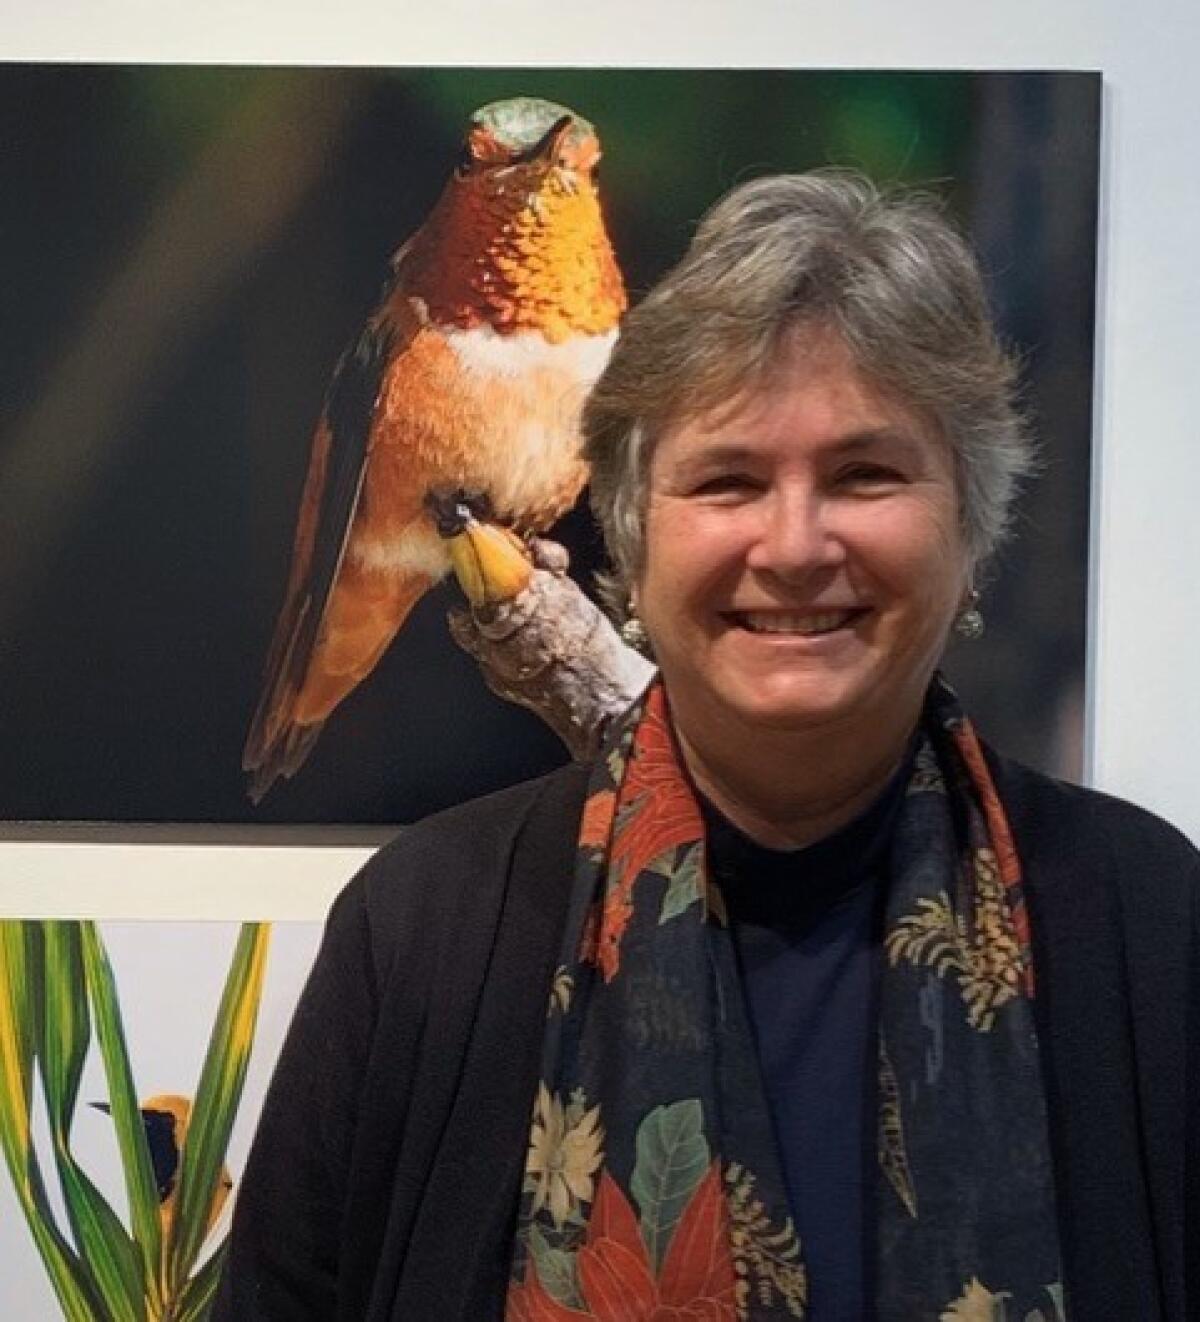 LJCC presents “Bird Watching In and Around San Diego” with biologist Nigella Hillgarth on Wednesday, April 28, online.